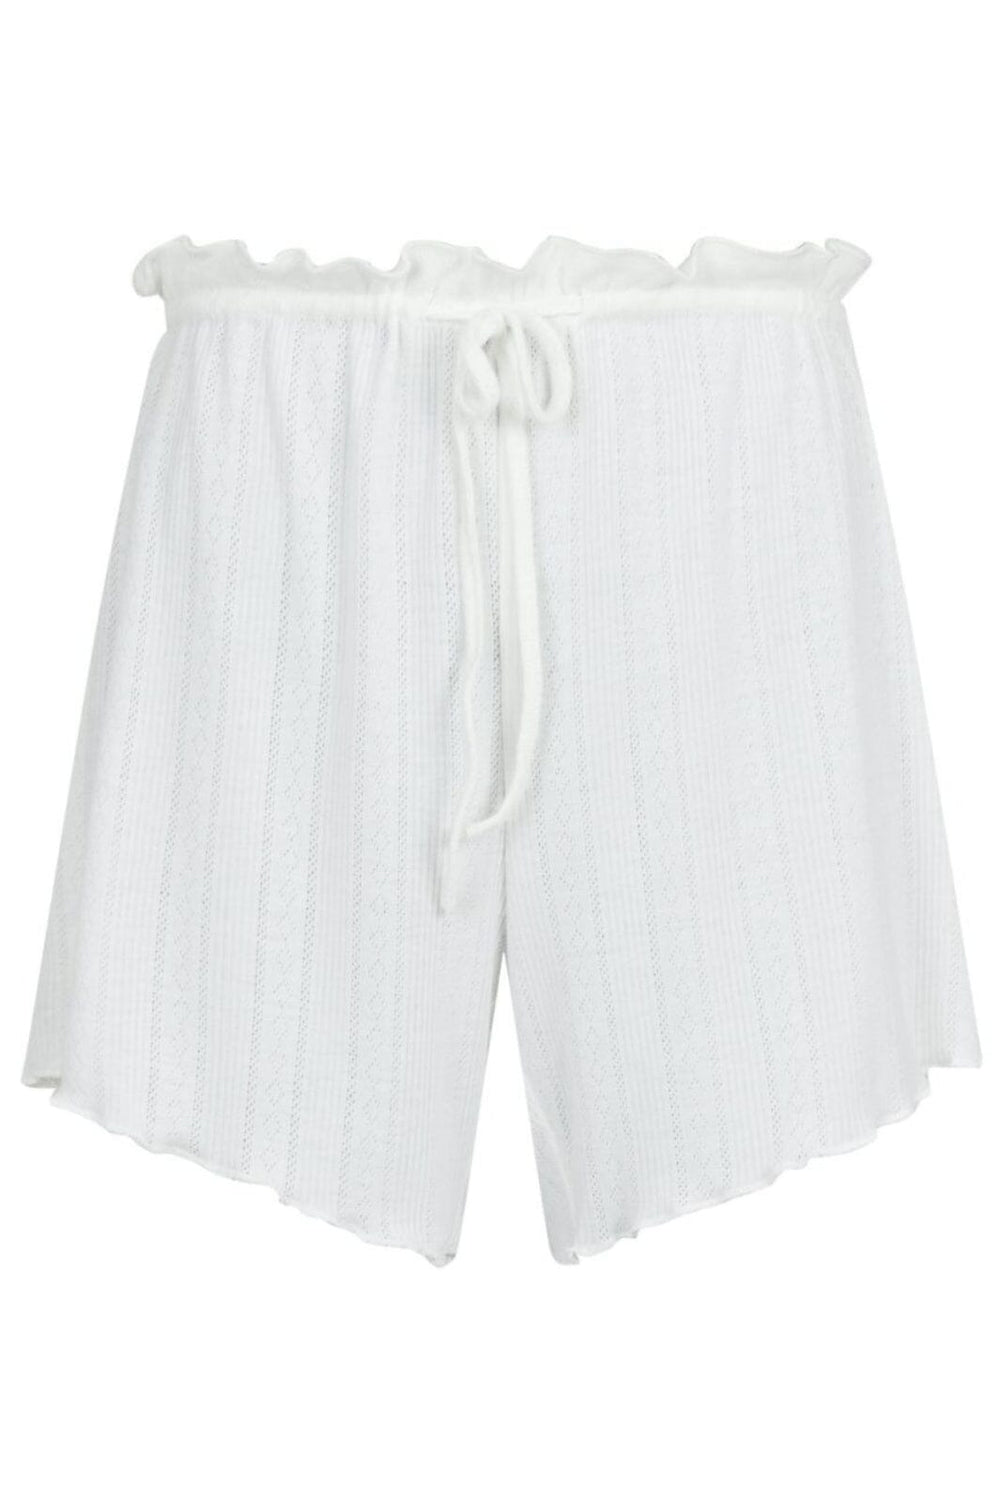 Neo Noir - Merritt Pointelle Shorts - White Shorts 